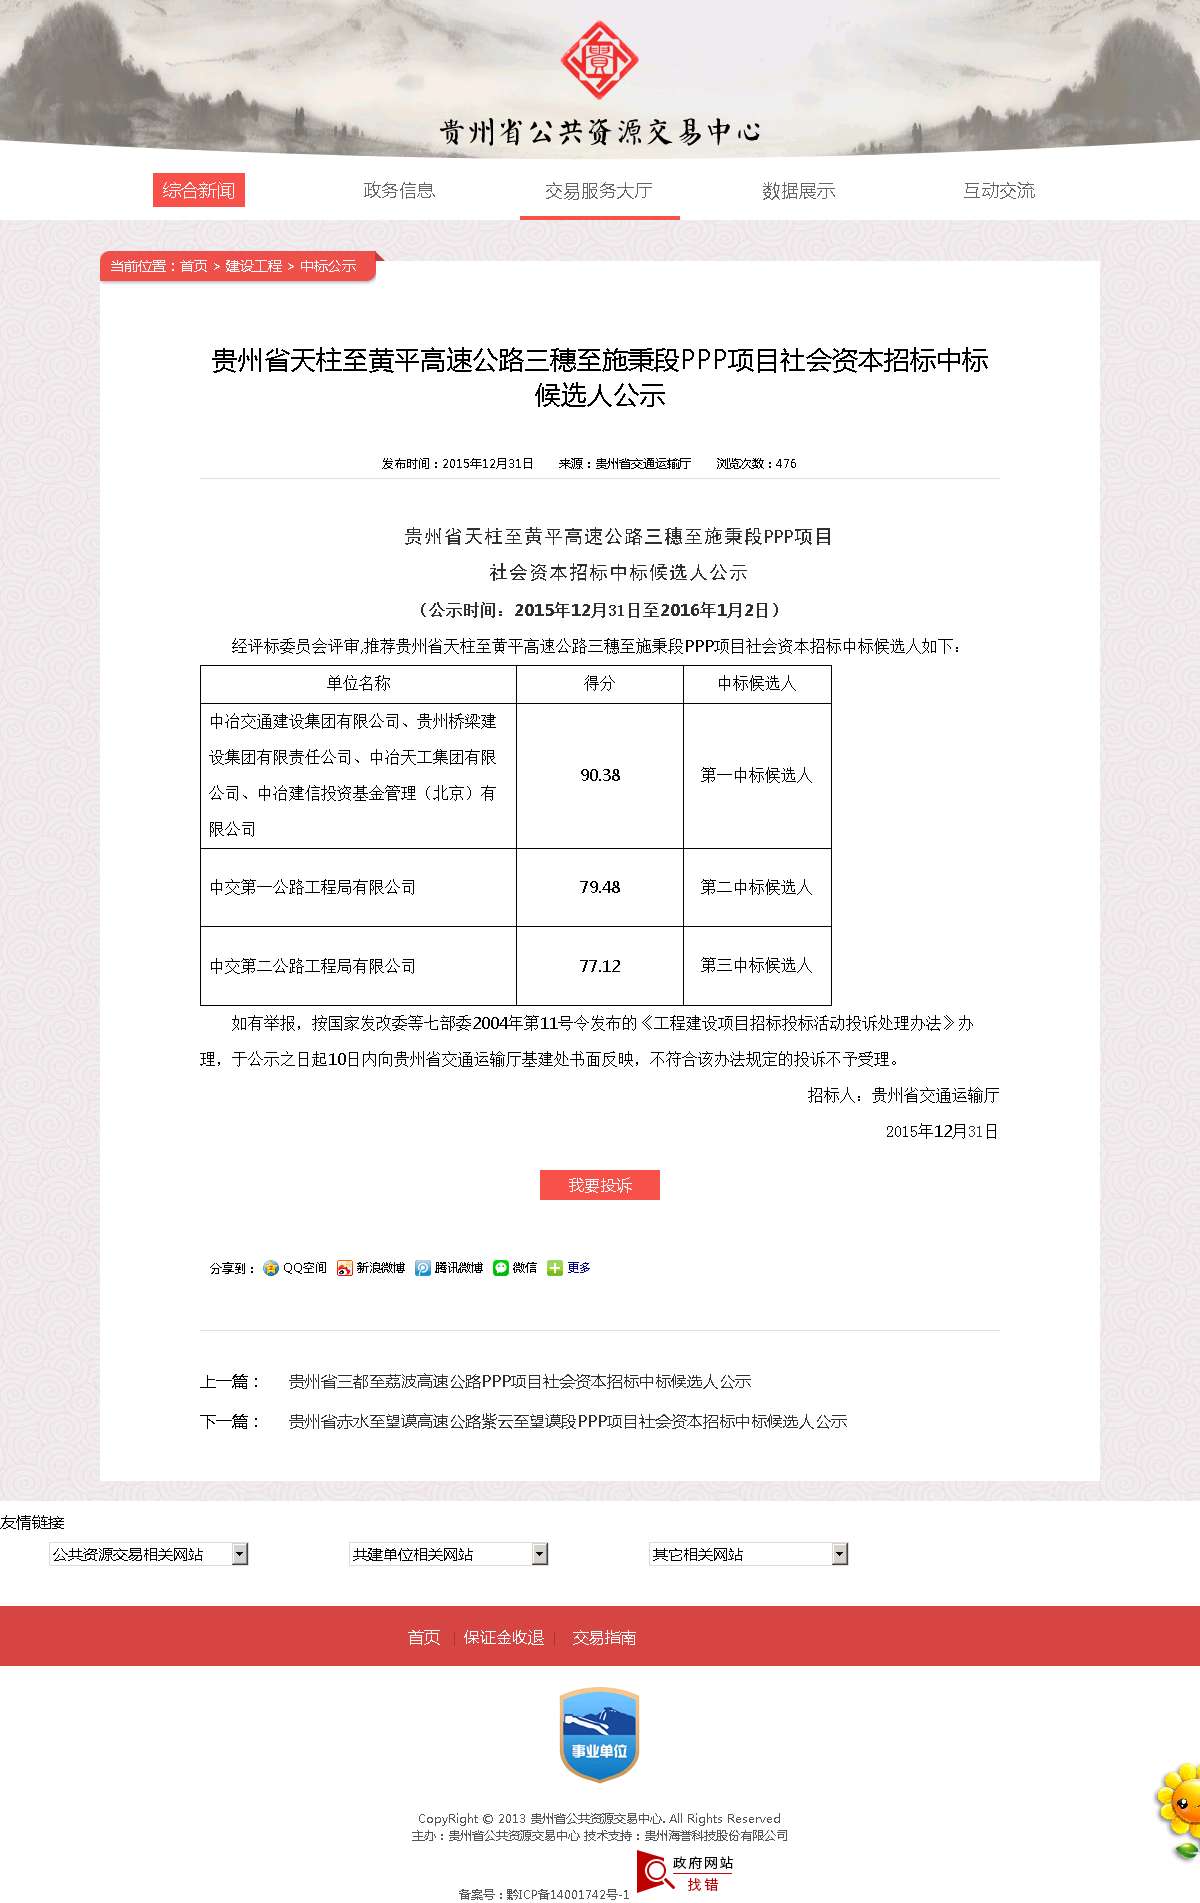 欧宝注册:贵州省纳雍至晴隆和六枝至安龙高速公路PPP项目招标失败公示